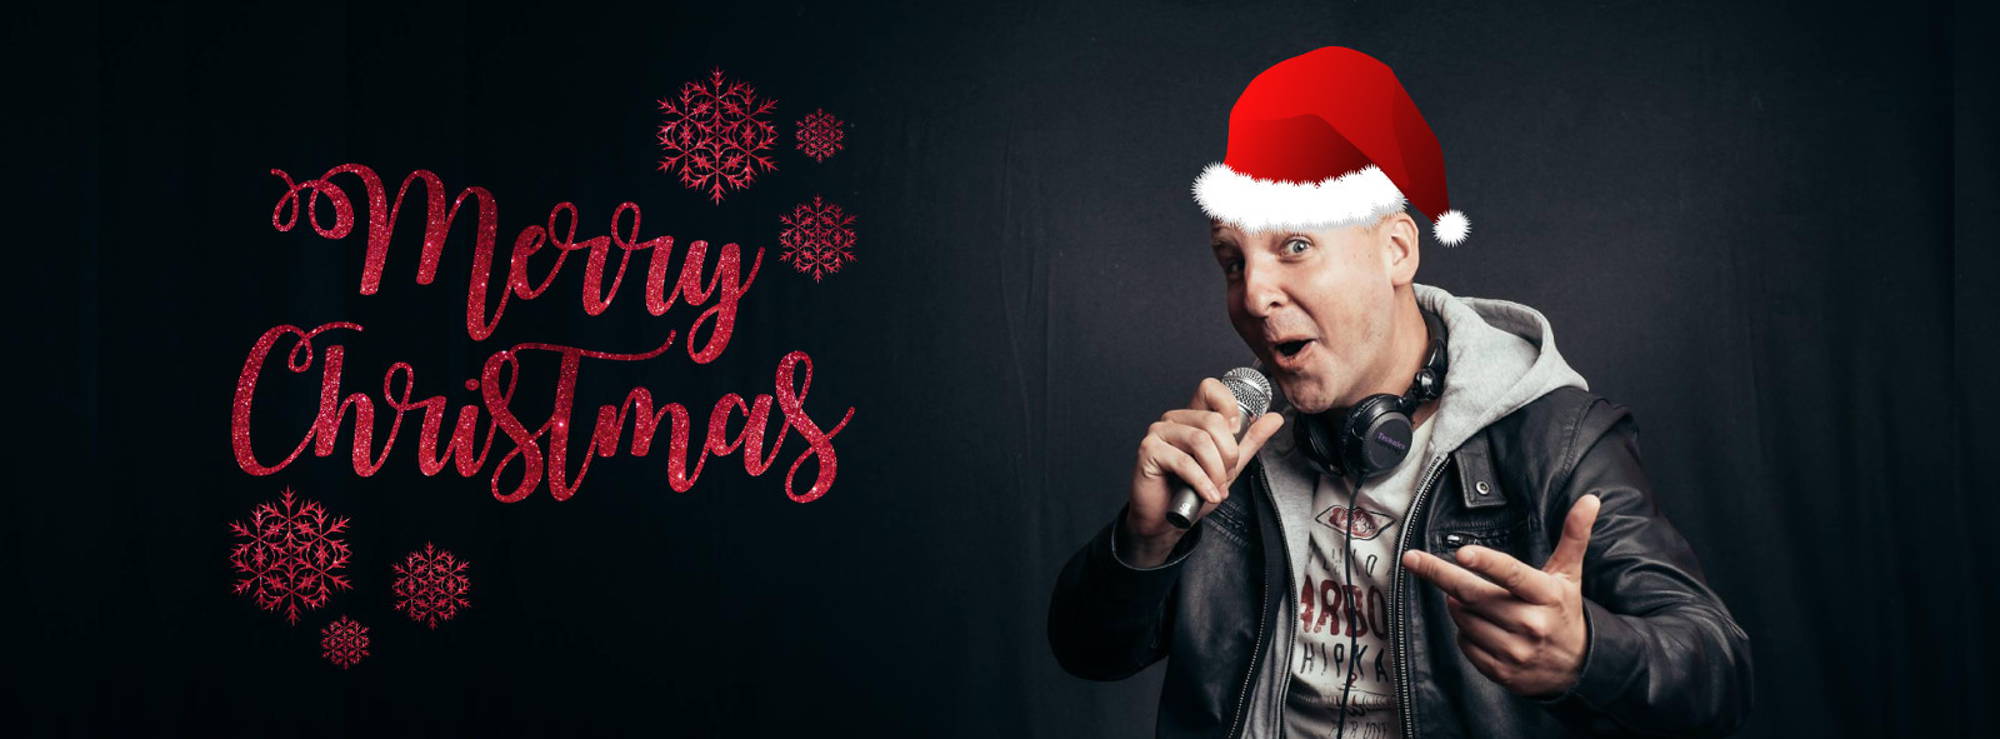 Frohe Weihnachten und schöne Festtage wünscht DJ Steve